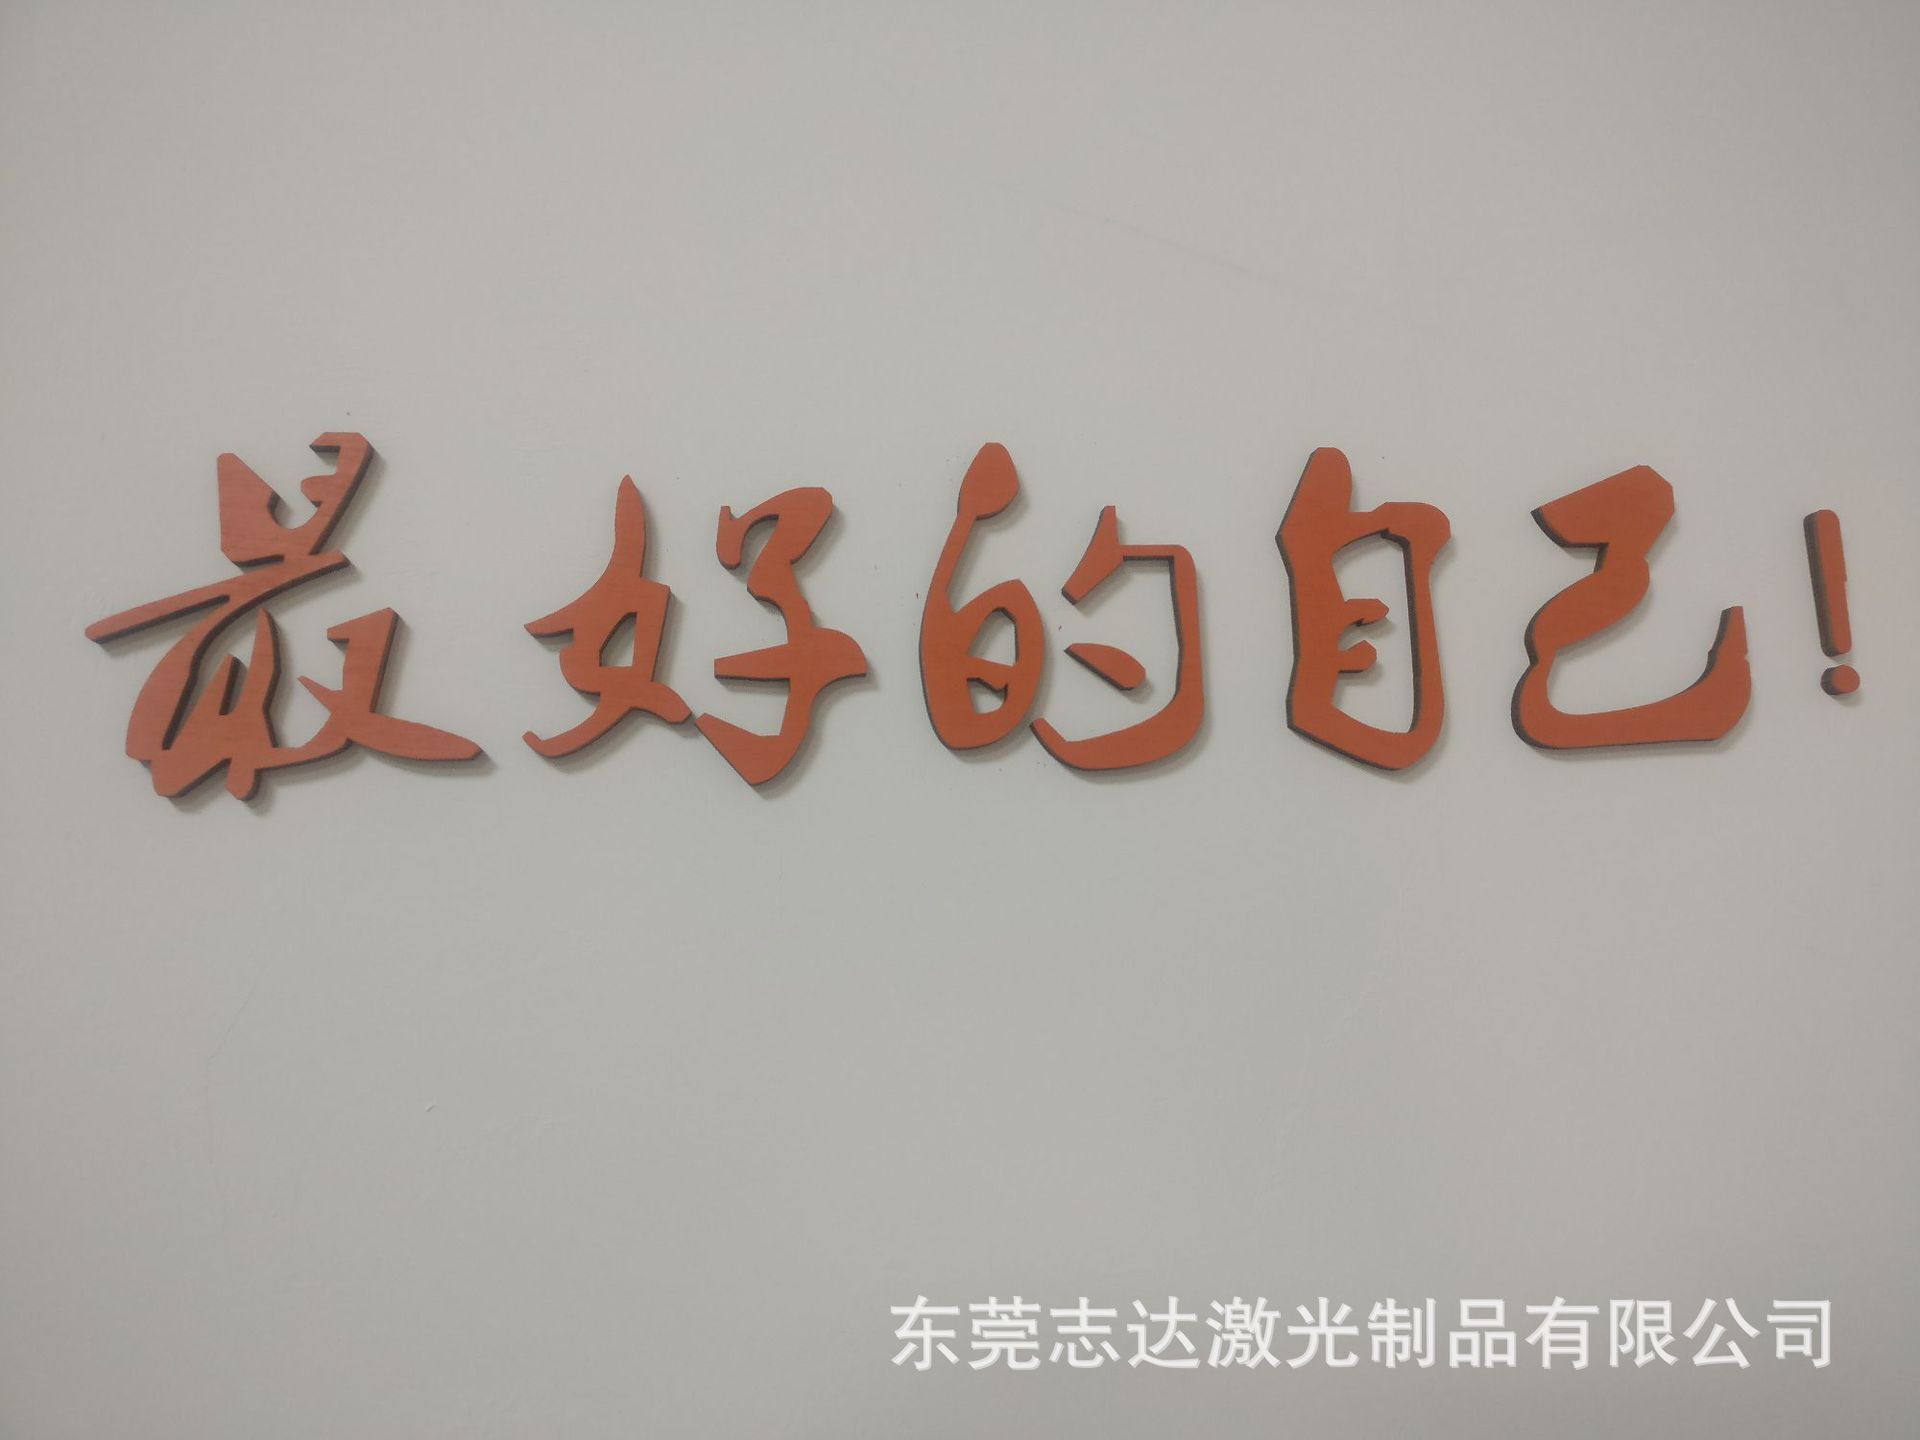 2、邯郸志达广告公司:铜仁市志达文化传媒有限公司怎么样？